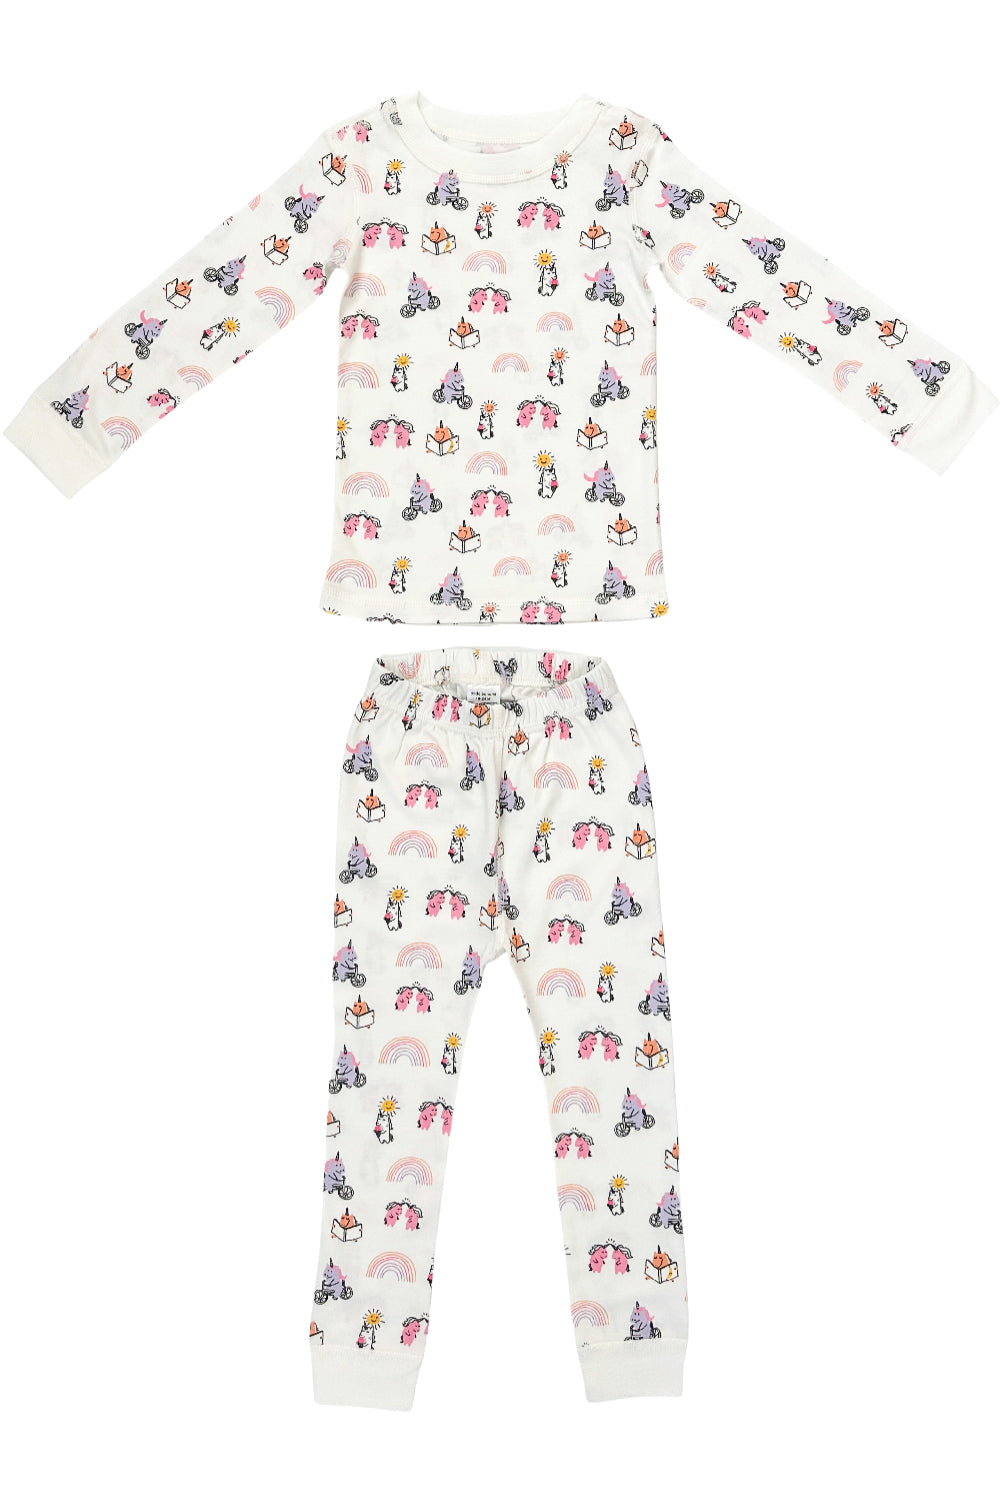 Organic Pima Cotton Unicorn Print Kids Pajamas